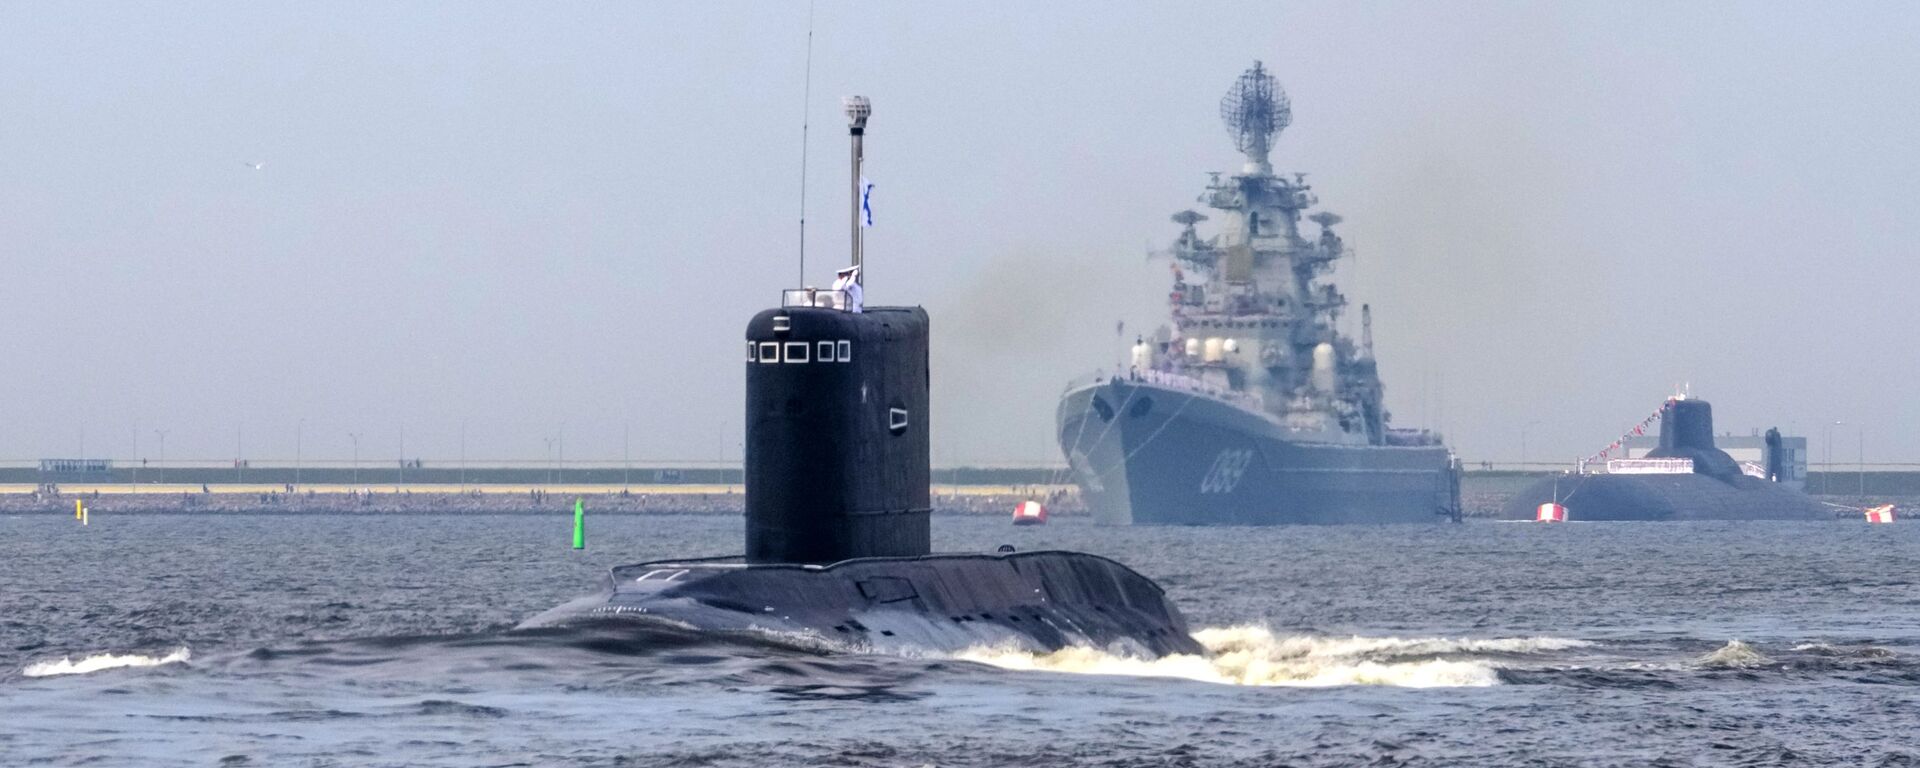 نشنال اینترست پنج کشتی قدرتمند نیروی دریایی روسیه را به معرفی گرفت - اسپوتنیک افغانستان  , 1920, 24.03.2021